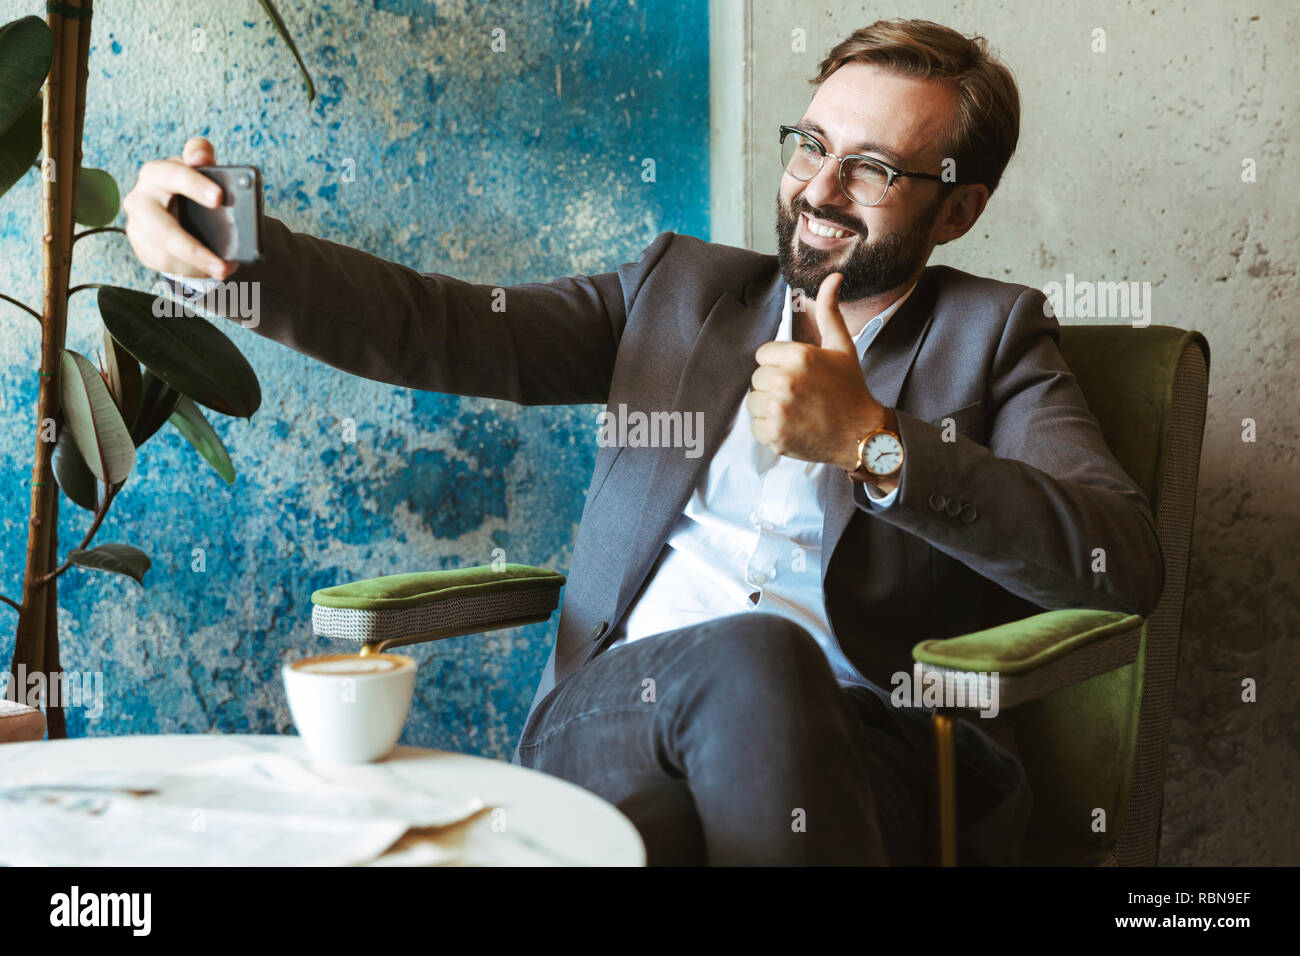 Lächeln, Geschäftsmann, tragen, Klage, eine selfie während im Cafe sitzen und Kaffee trinken Stockfoto